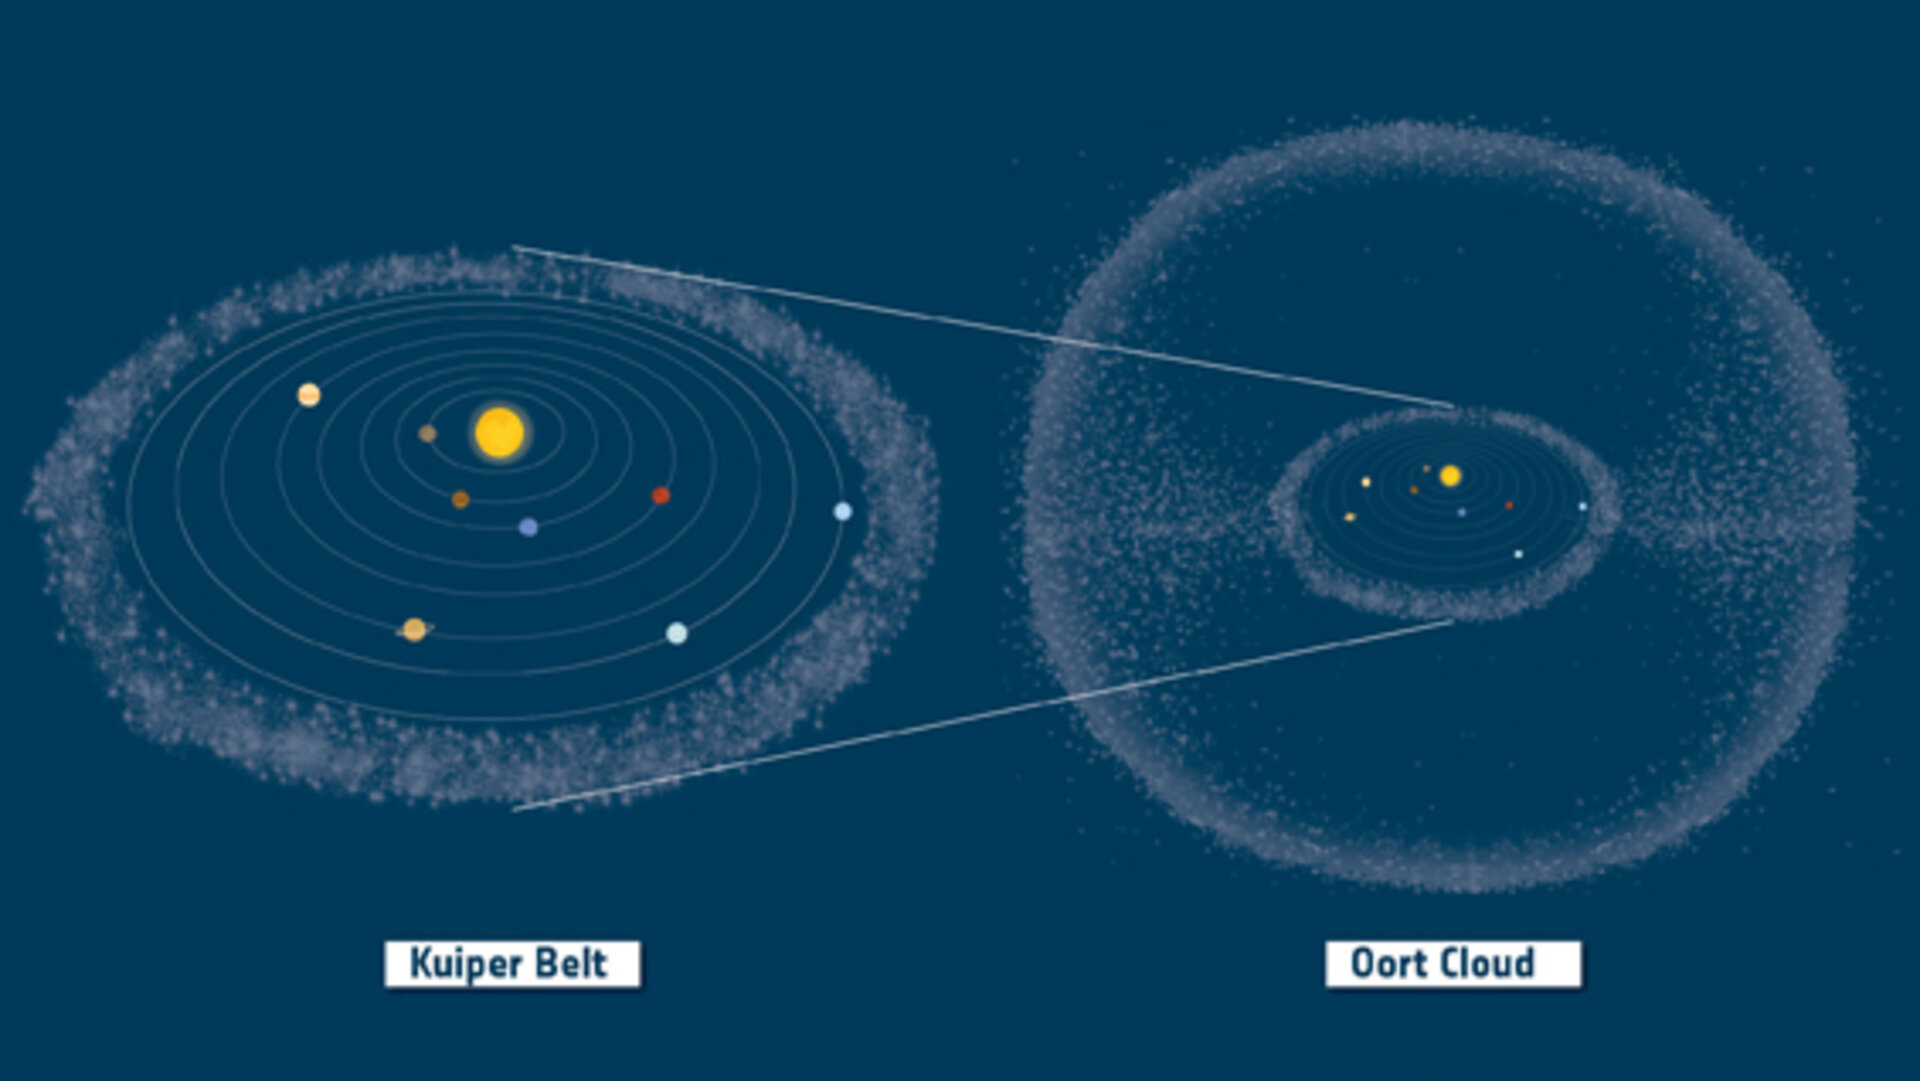 Иллюстрация, показывающая два основных резервуара комет в Солнечной системе